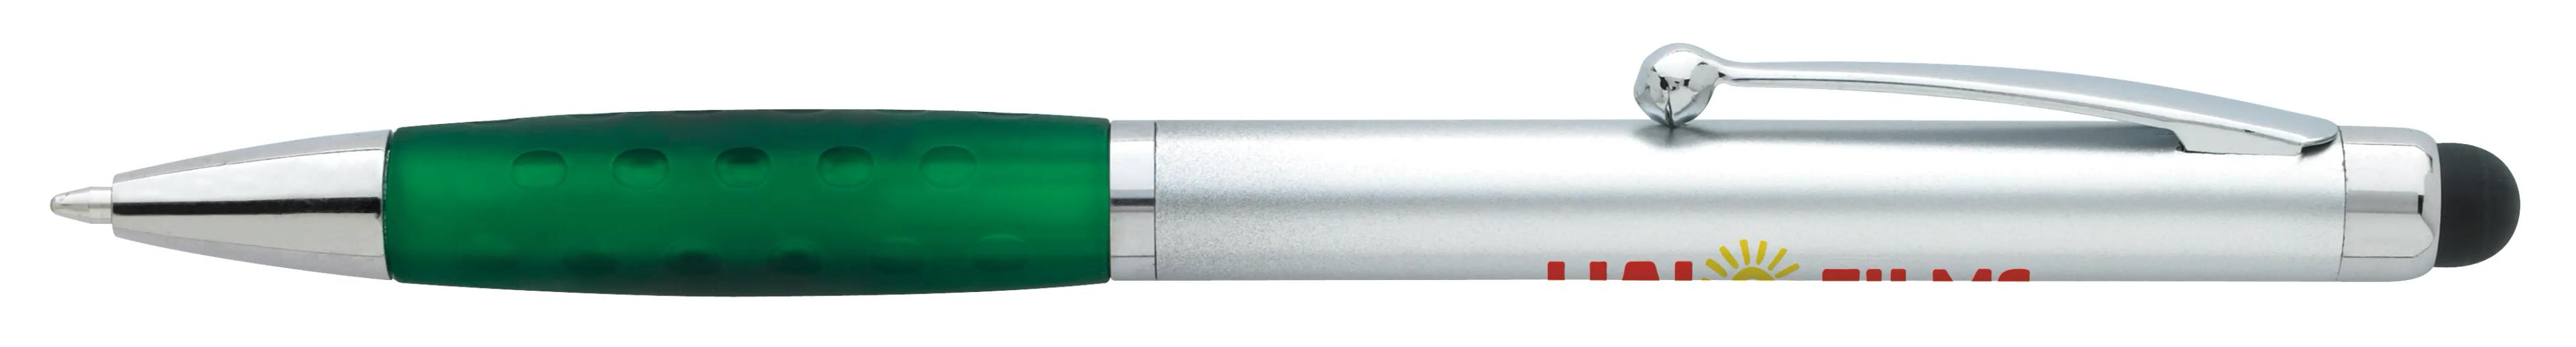 Silver Stylus Grip Pen 2 of 11